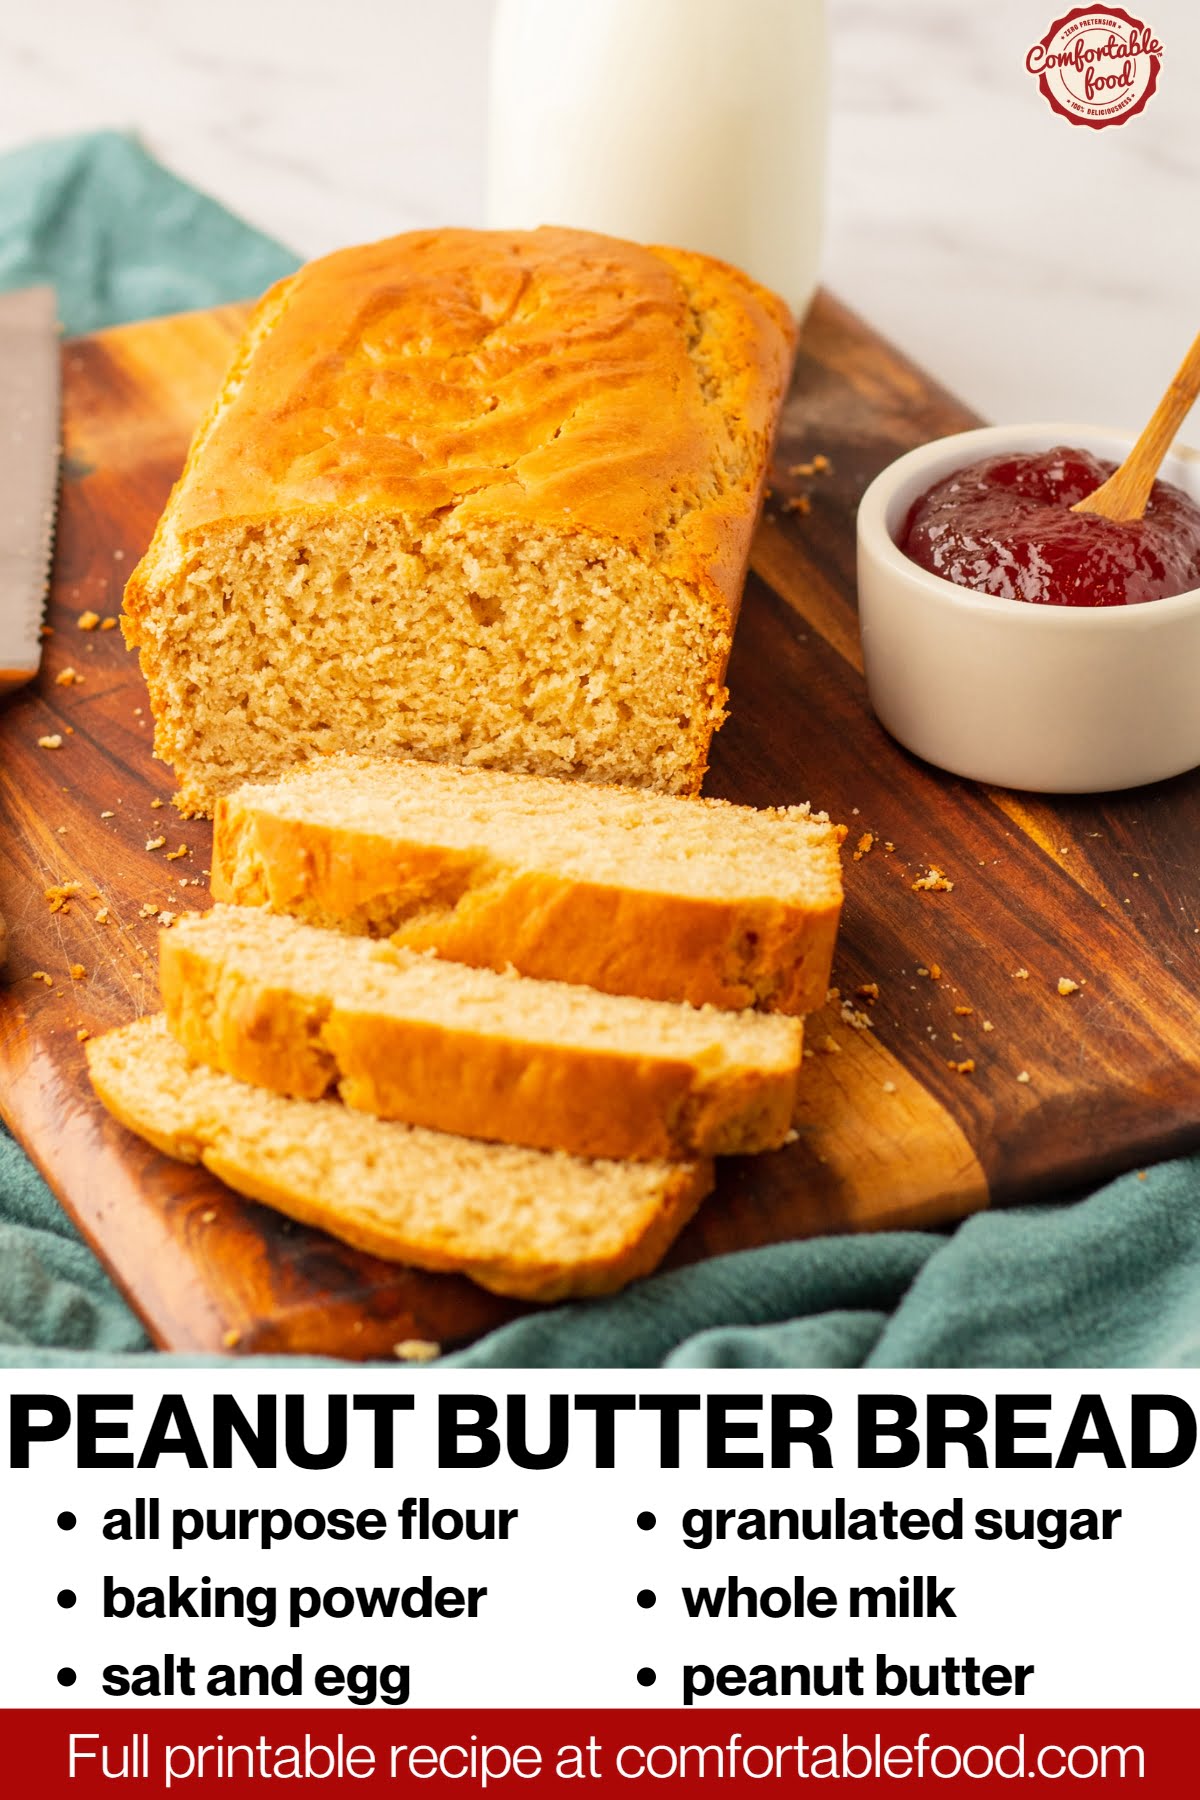 Peanut butter bread socials